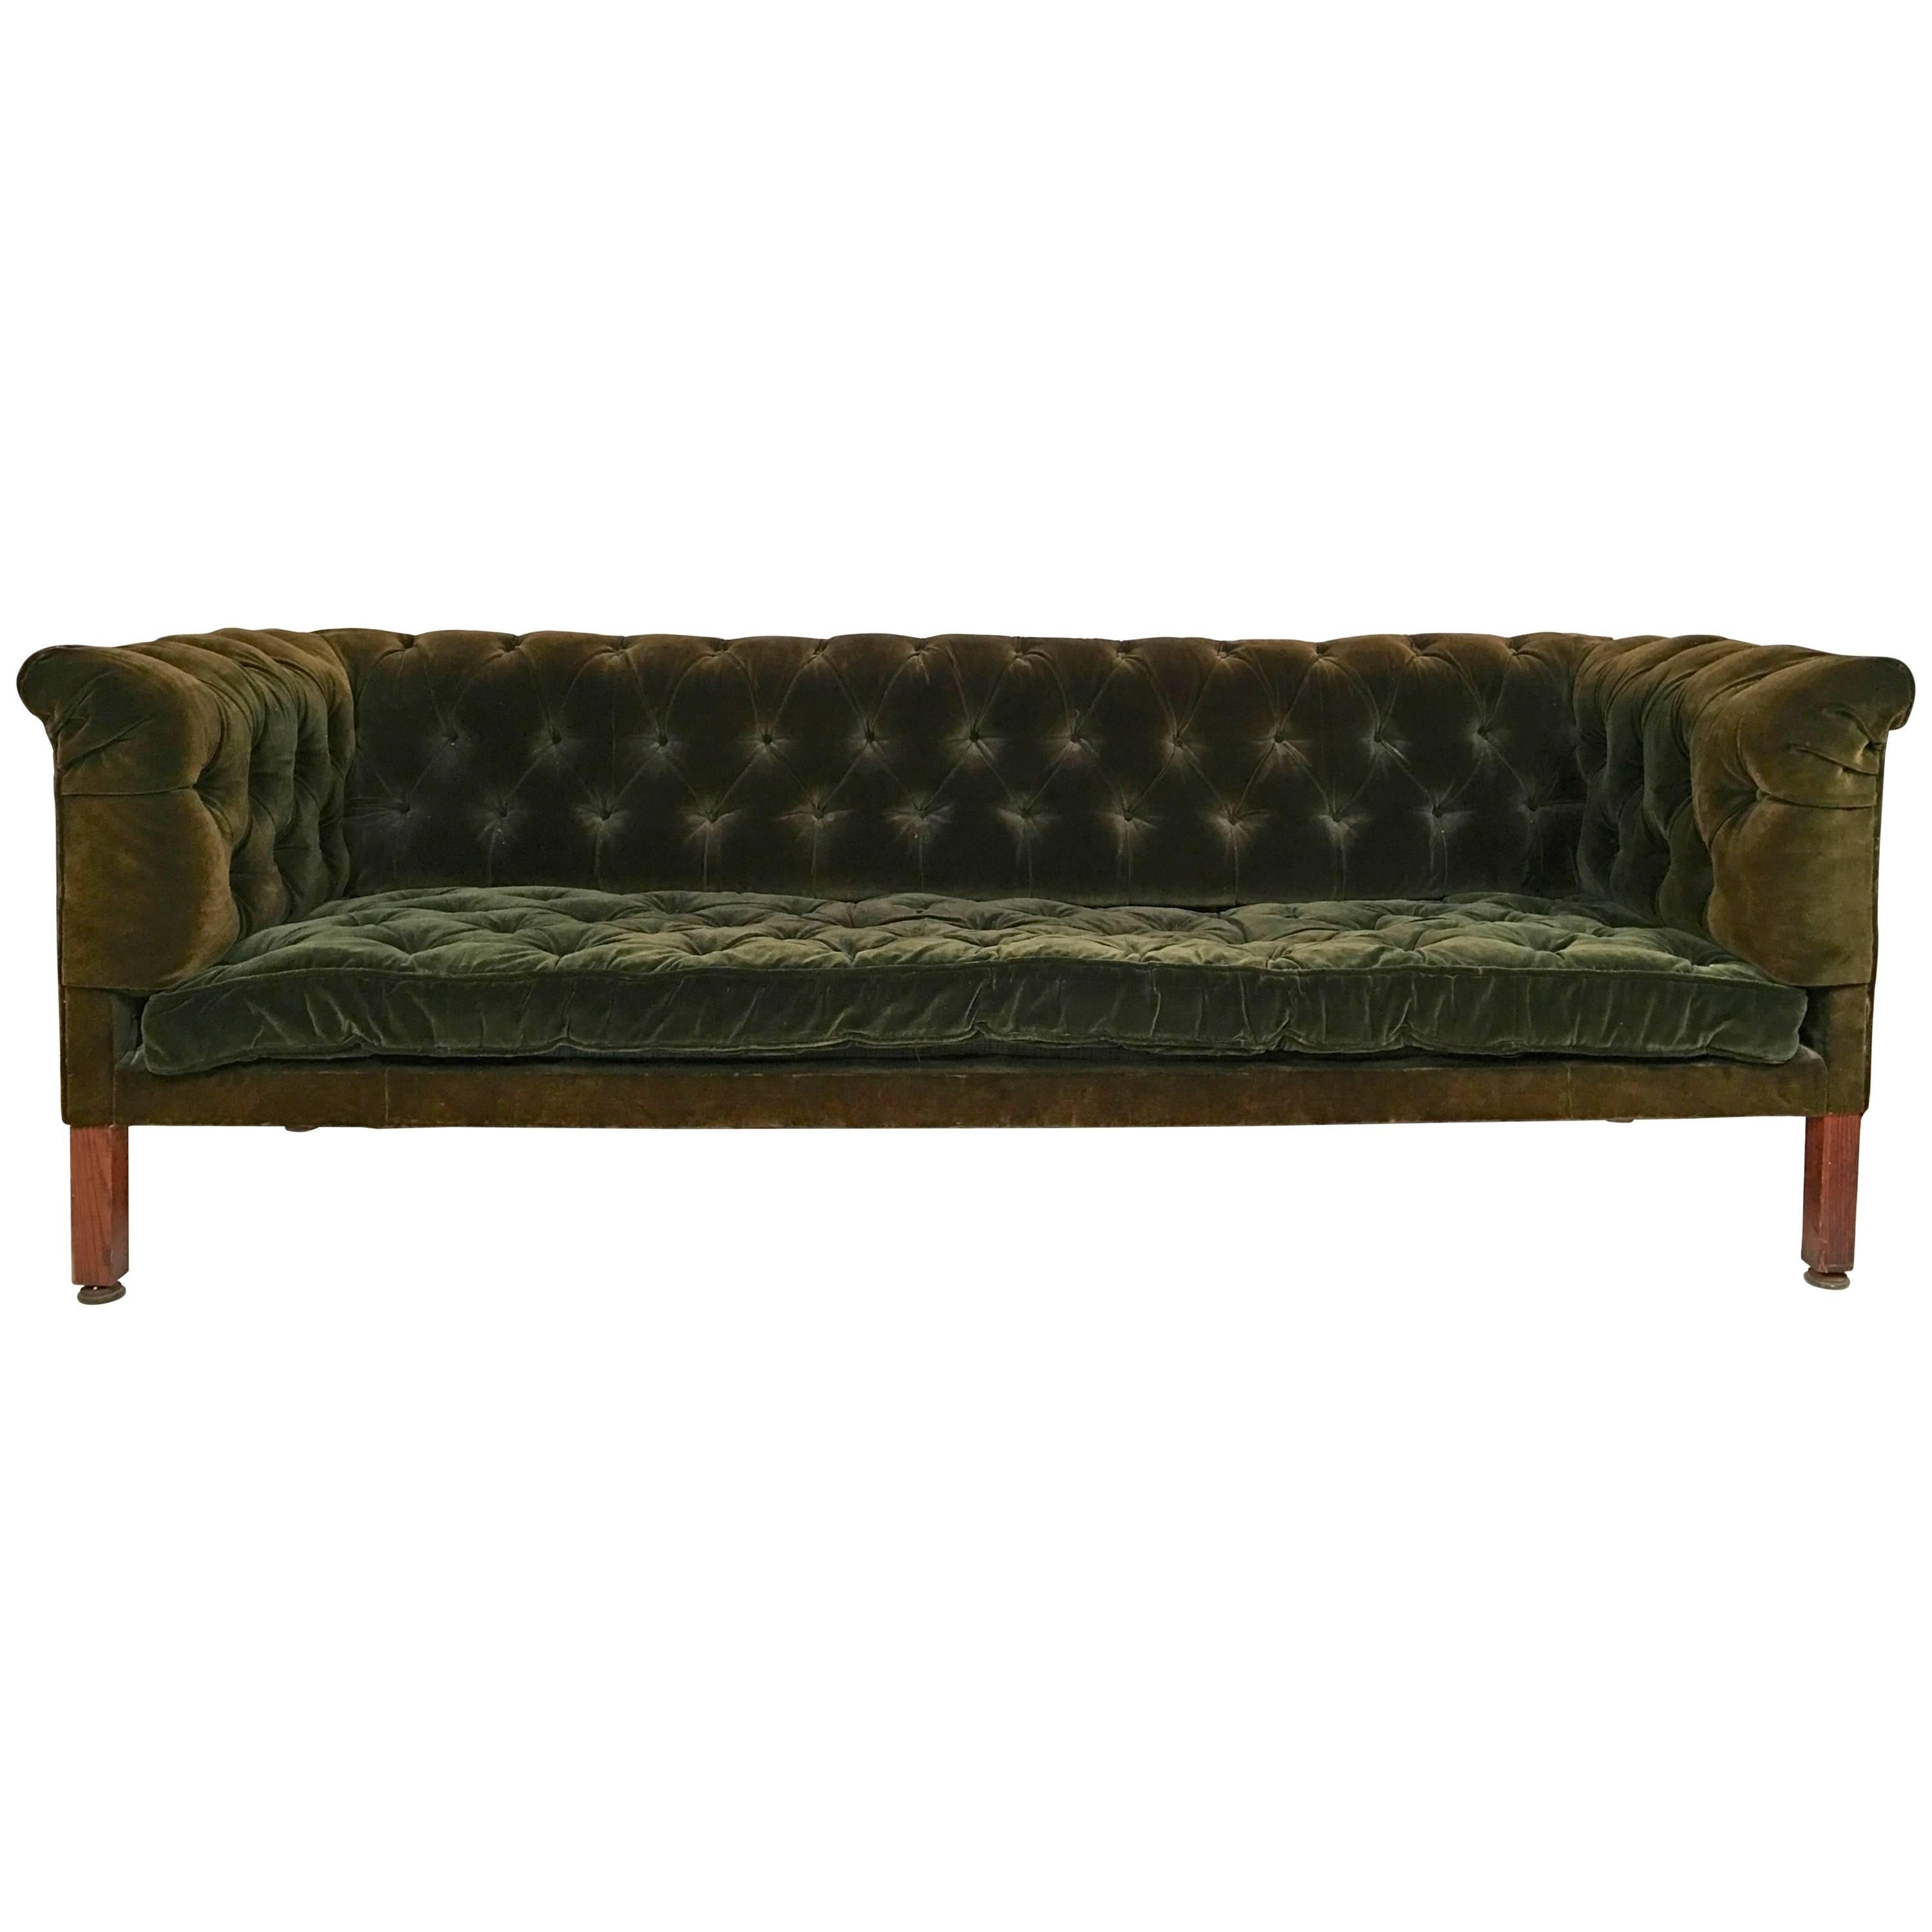 19th Century Green Tufted Velvet Chesterfield Sofa